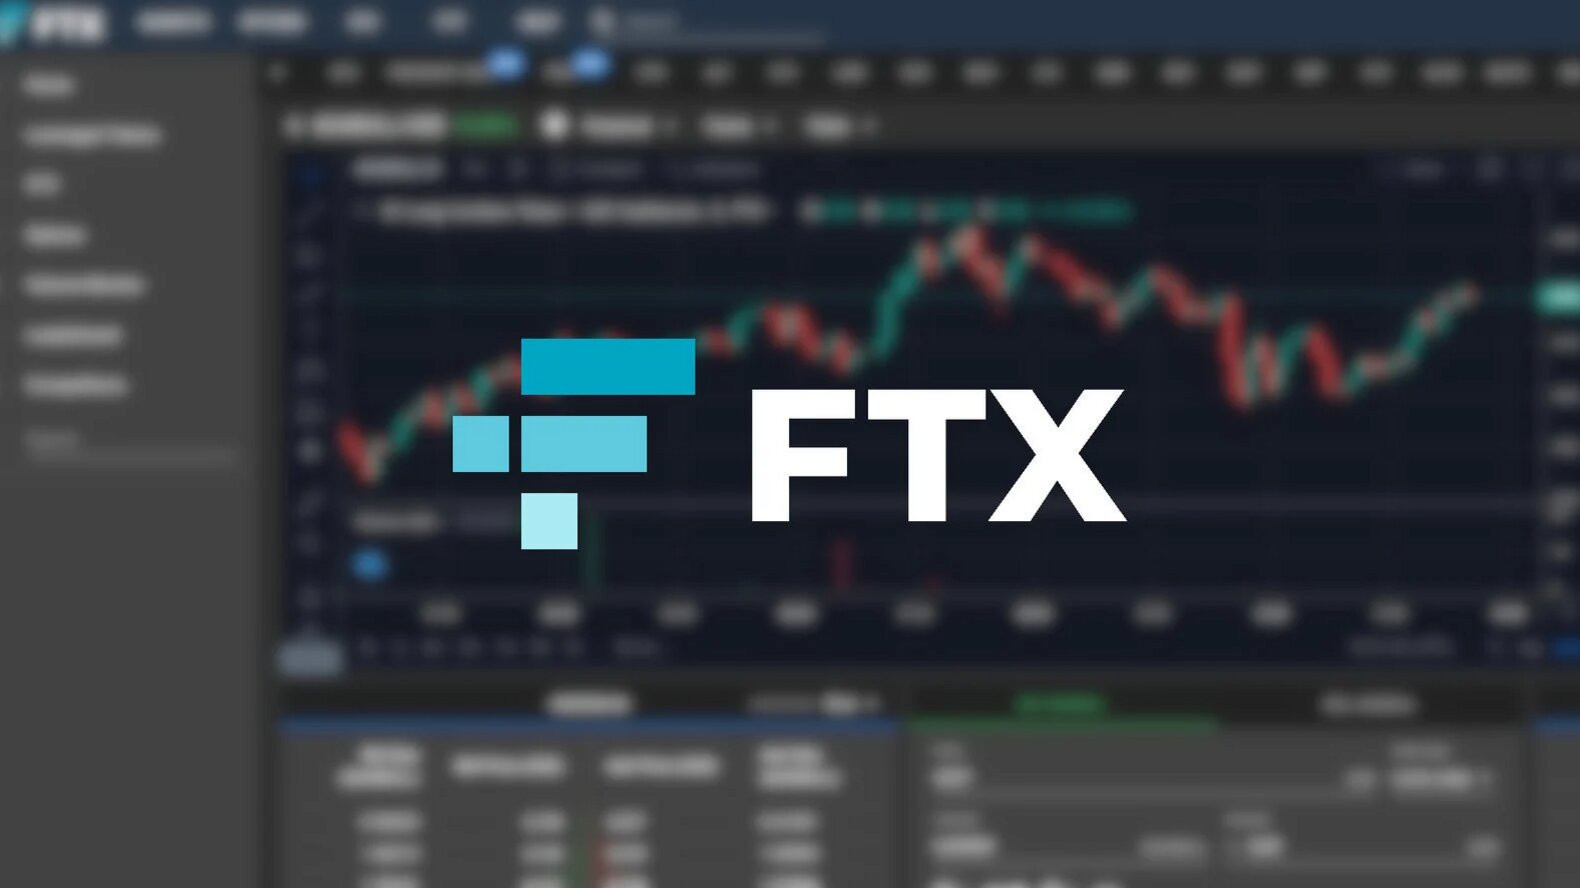 Sàn FTX đã tiến hành niêm yết token BIT của tổ chức BitDAO